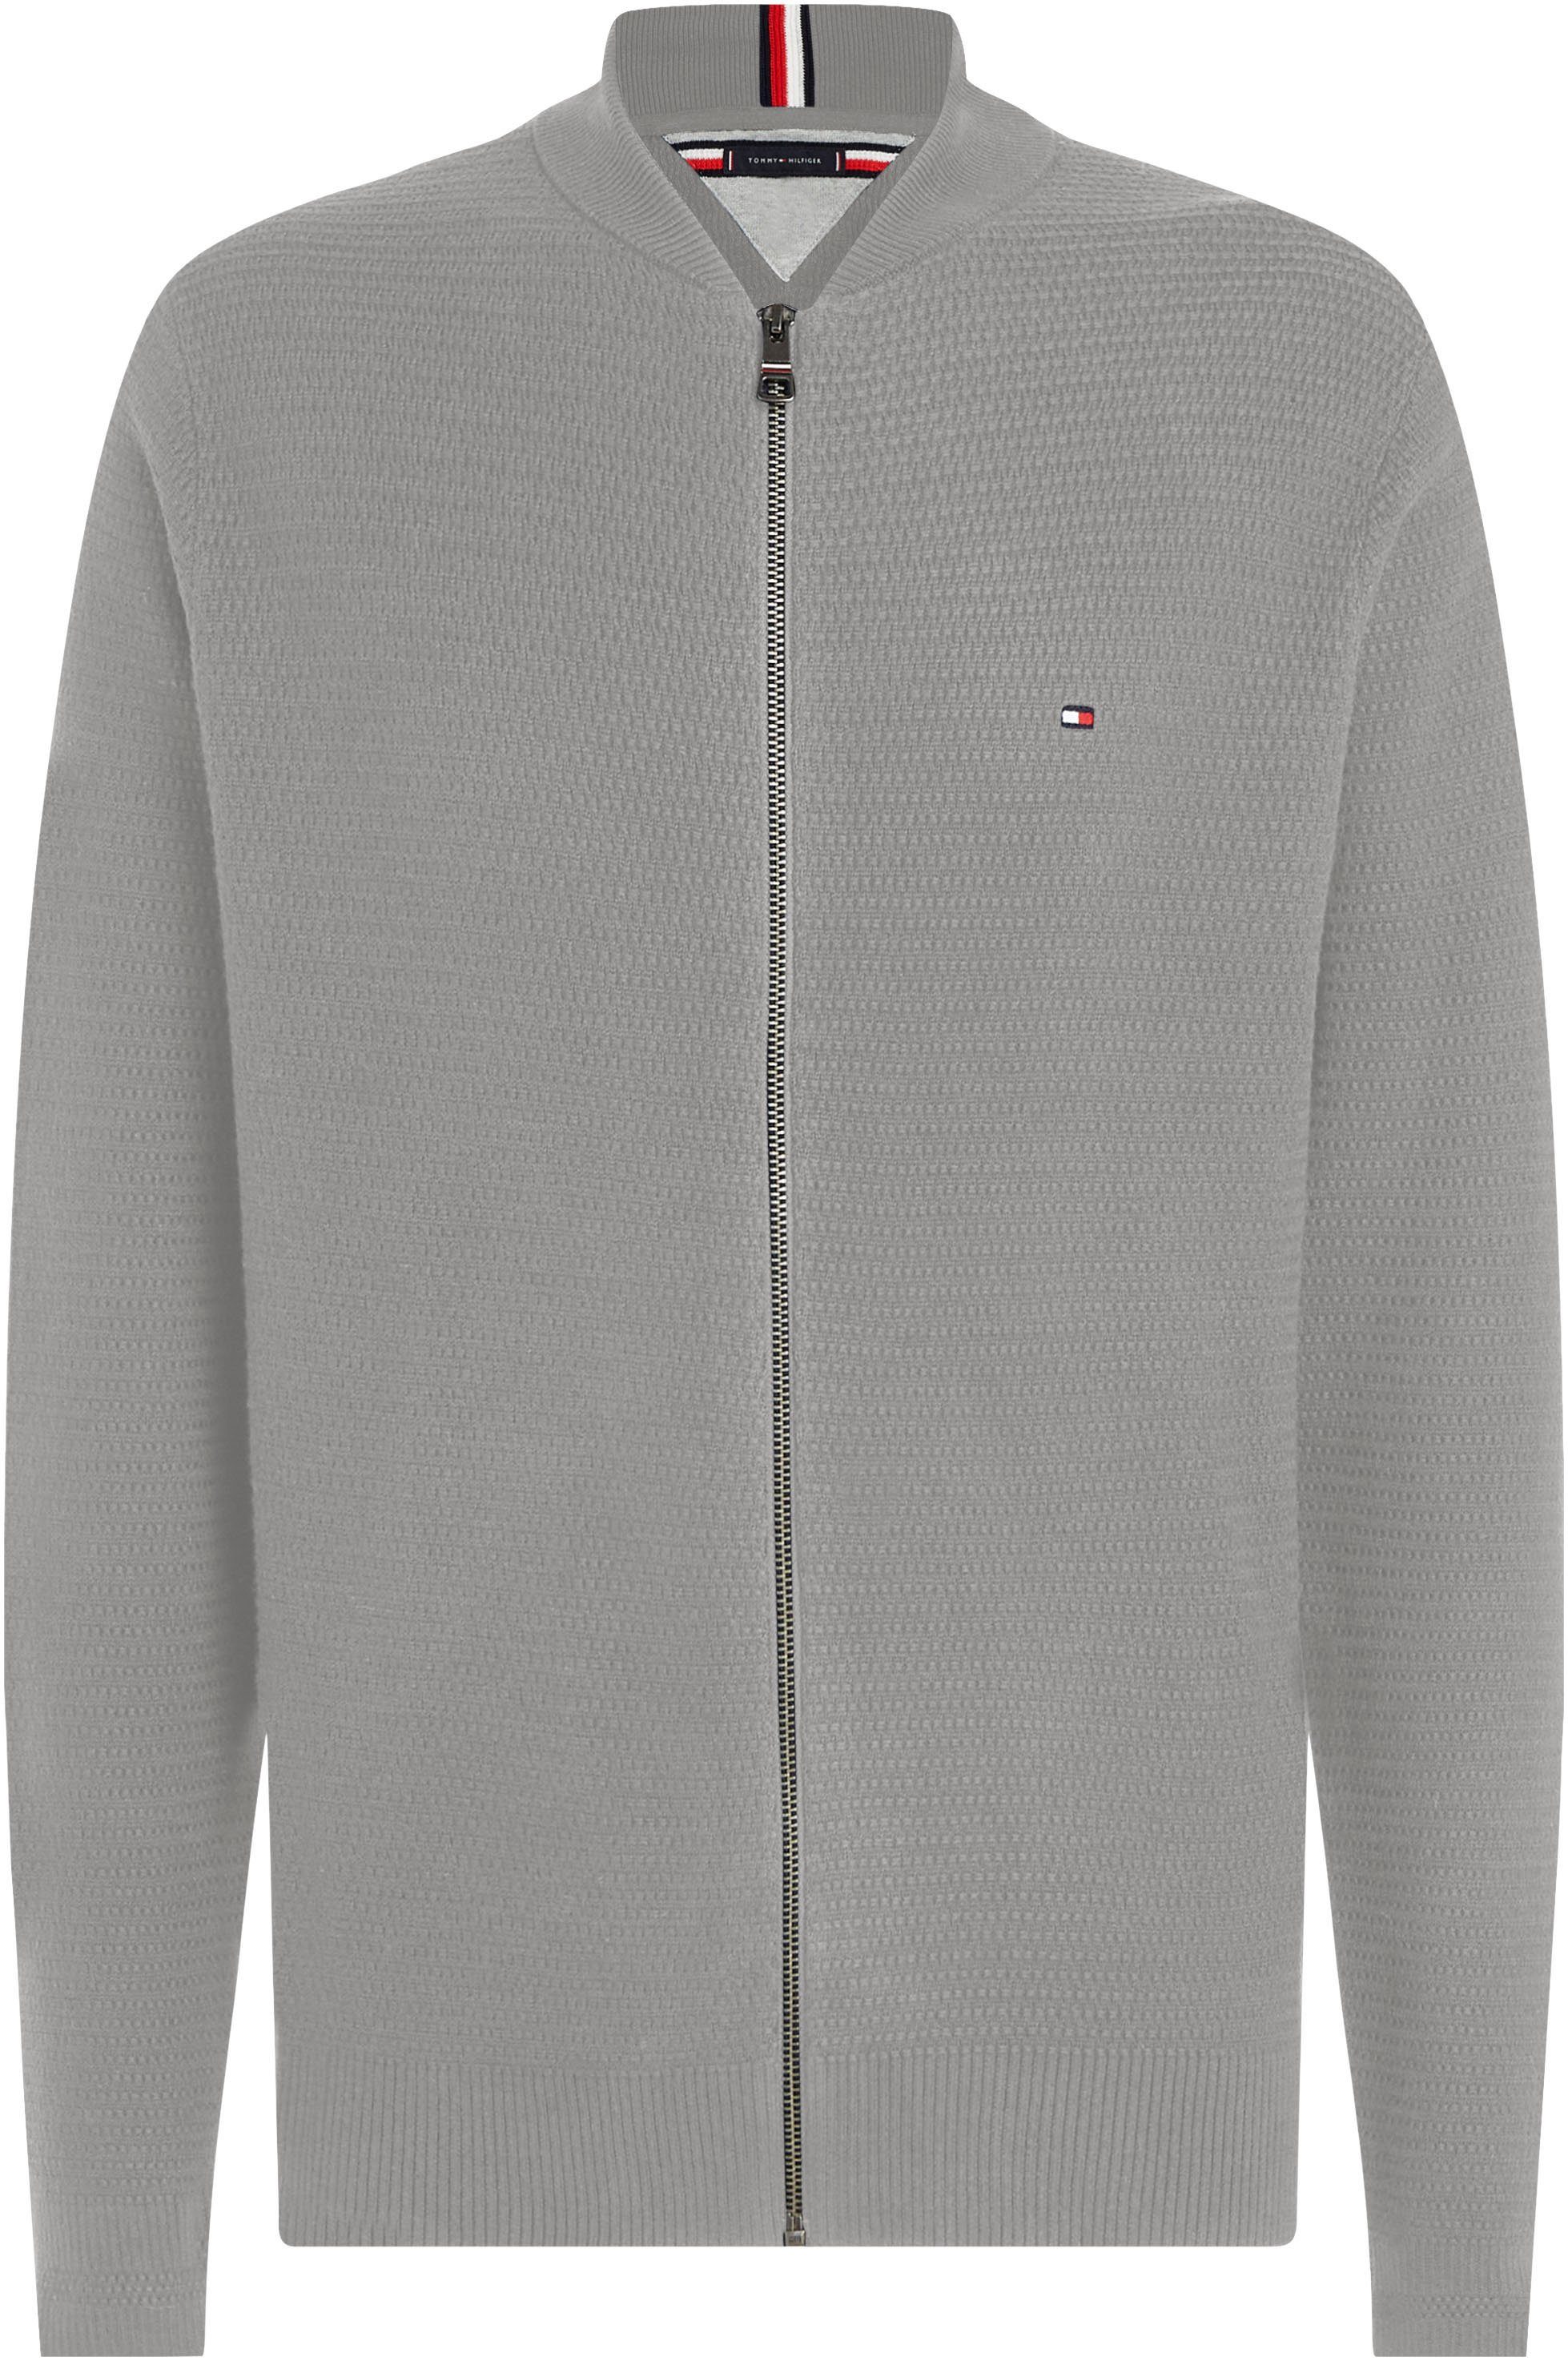 Grey in Heather ZIP Sweatshirt strukturierter INTERLACED Optik BASEBALL Tommy THROUGH Medium Hilfiger